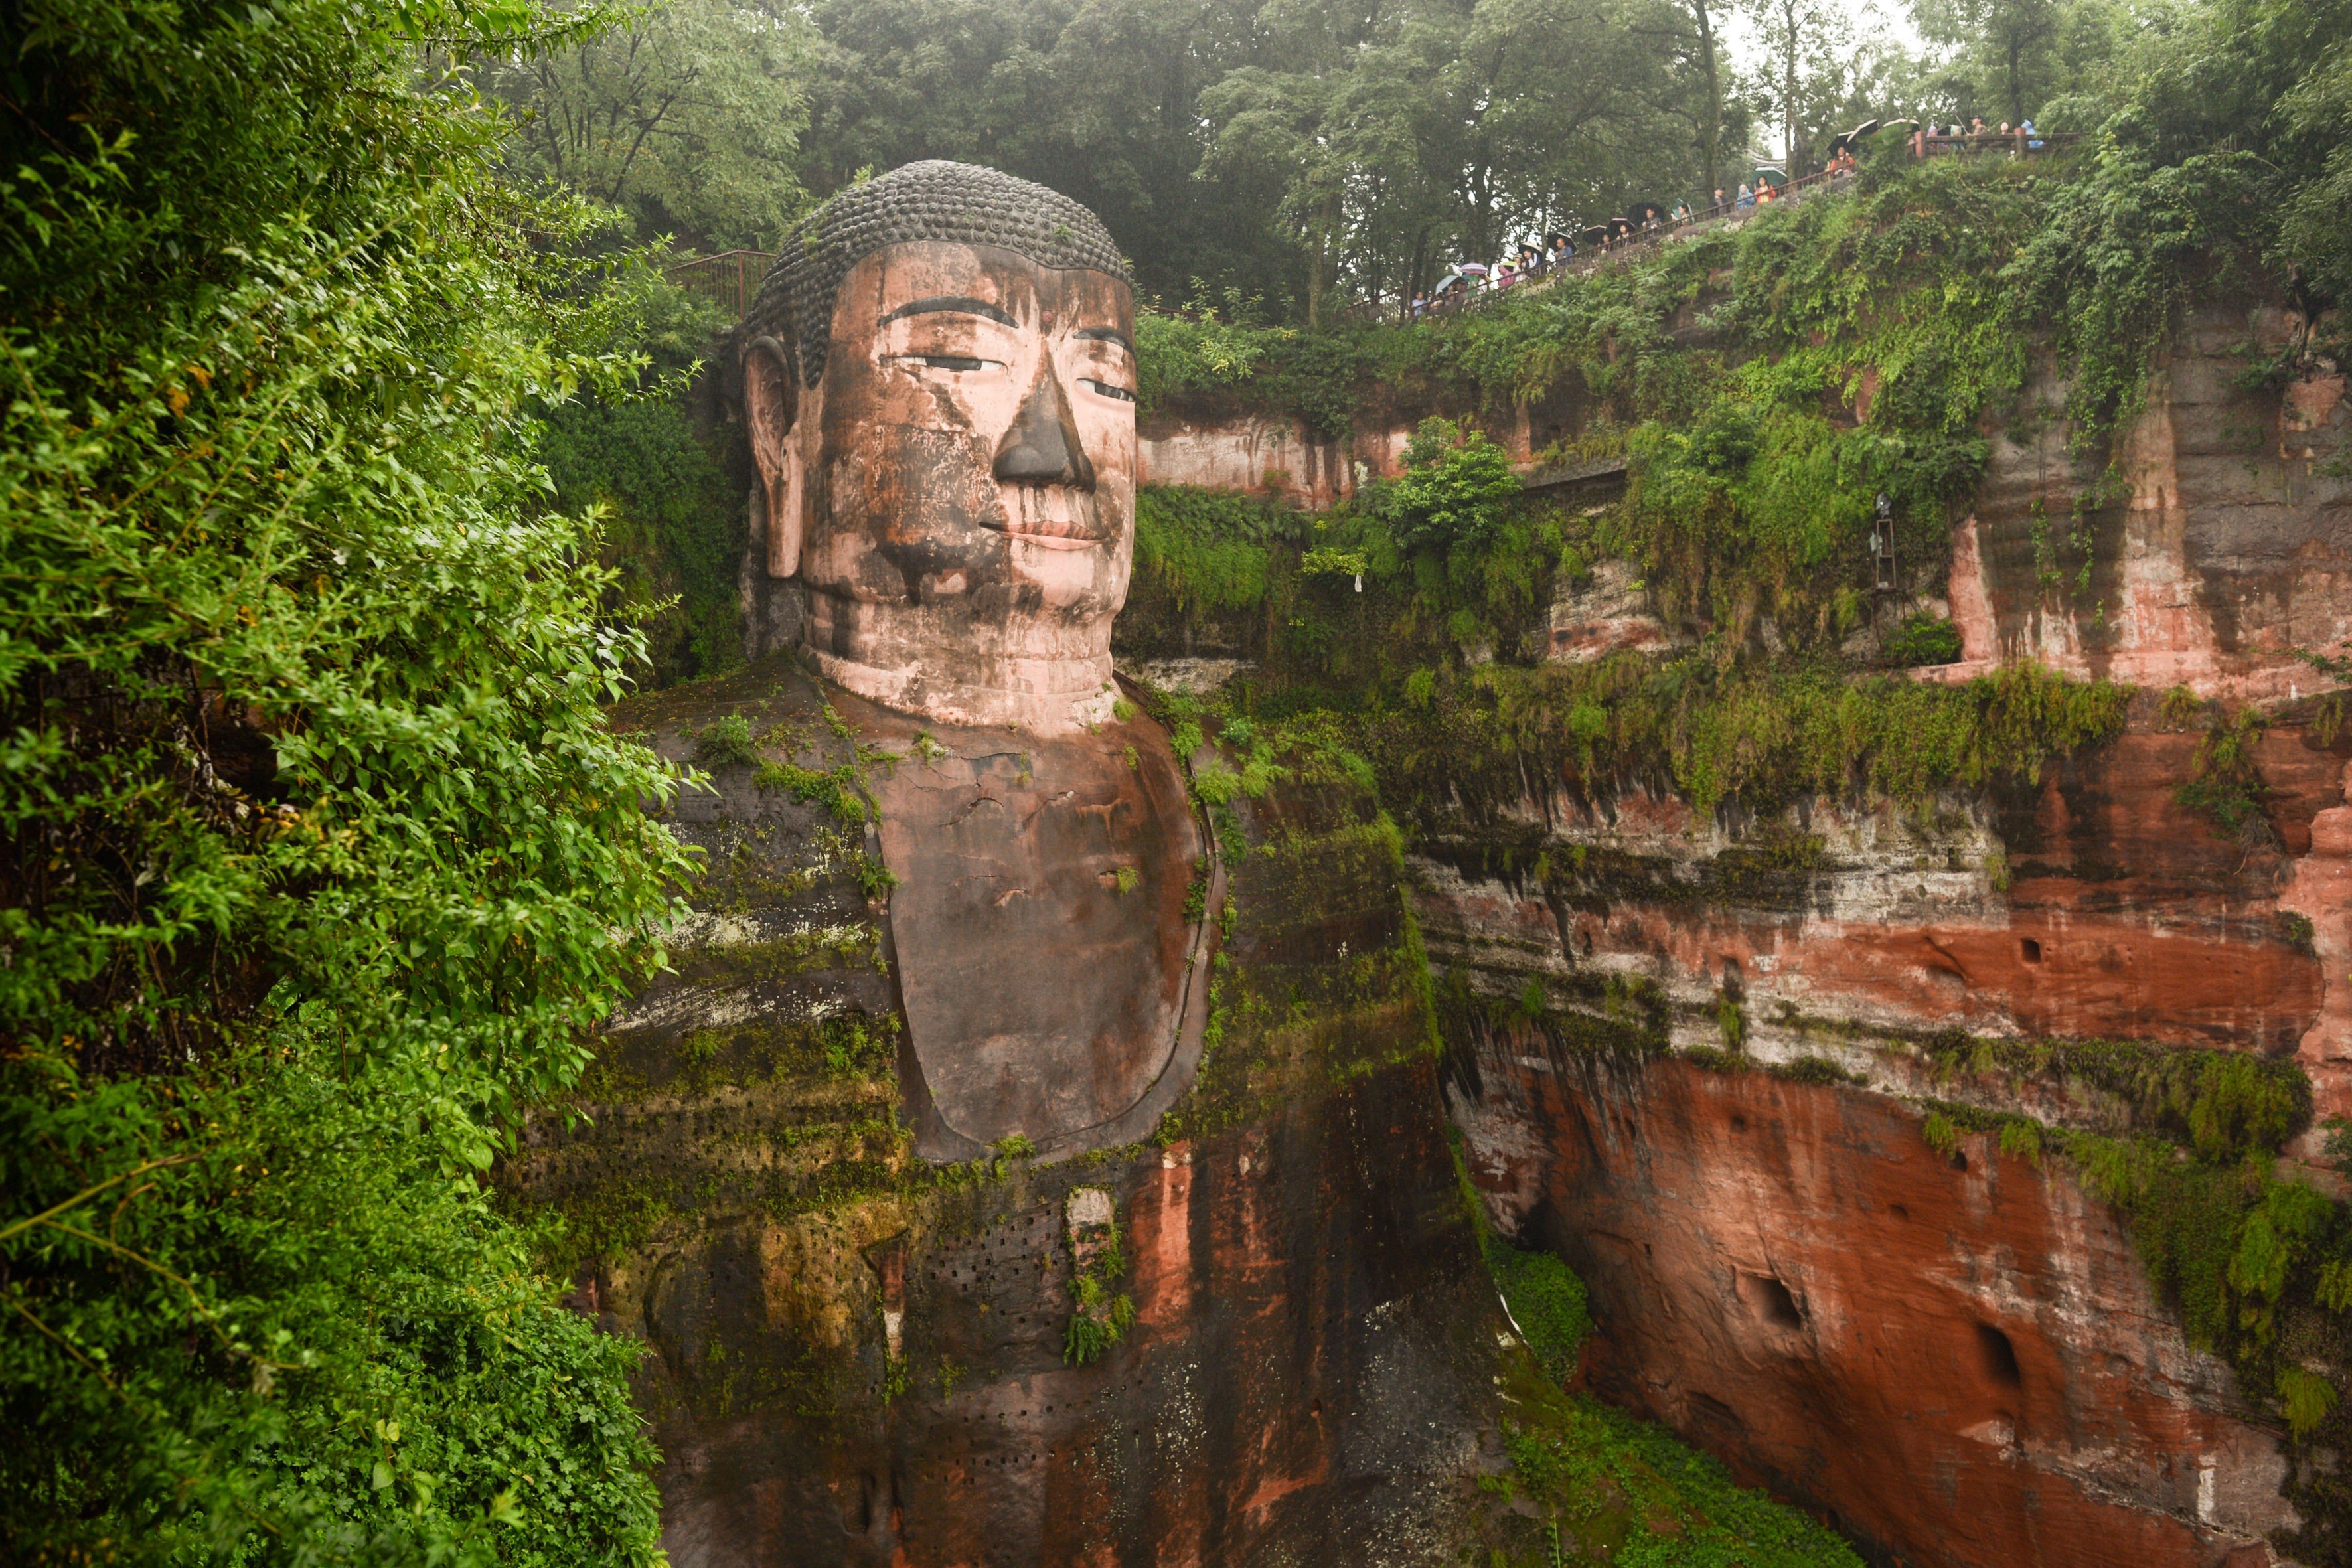 Leshan Giant Buddha is a popular sidetrip destination from Chengdu.